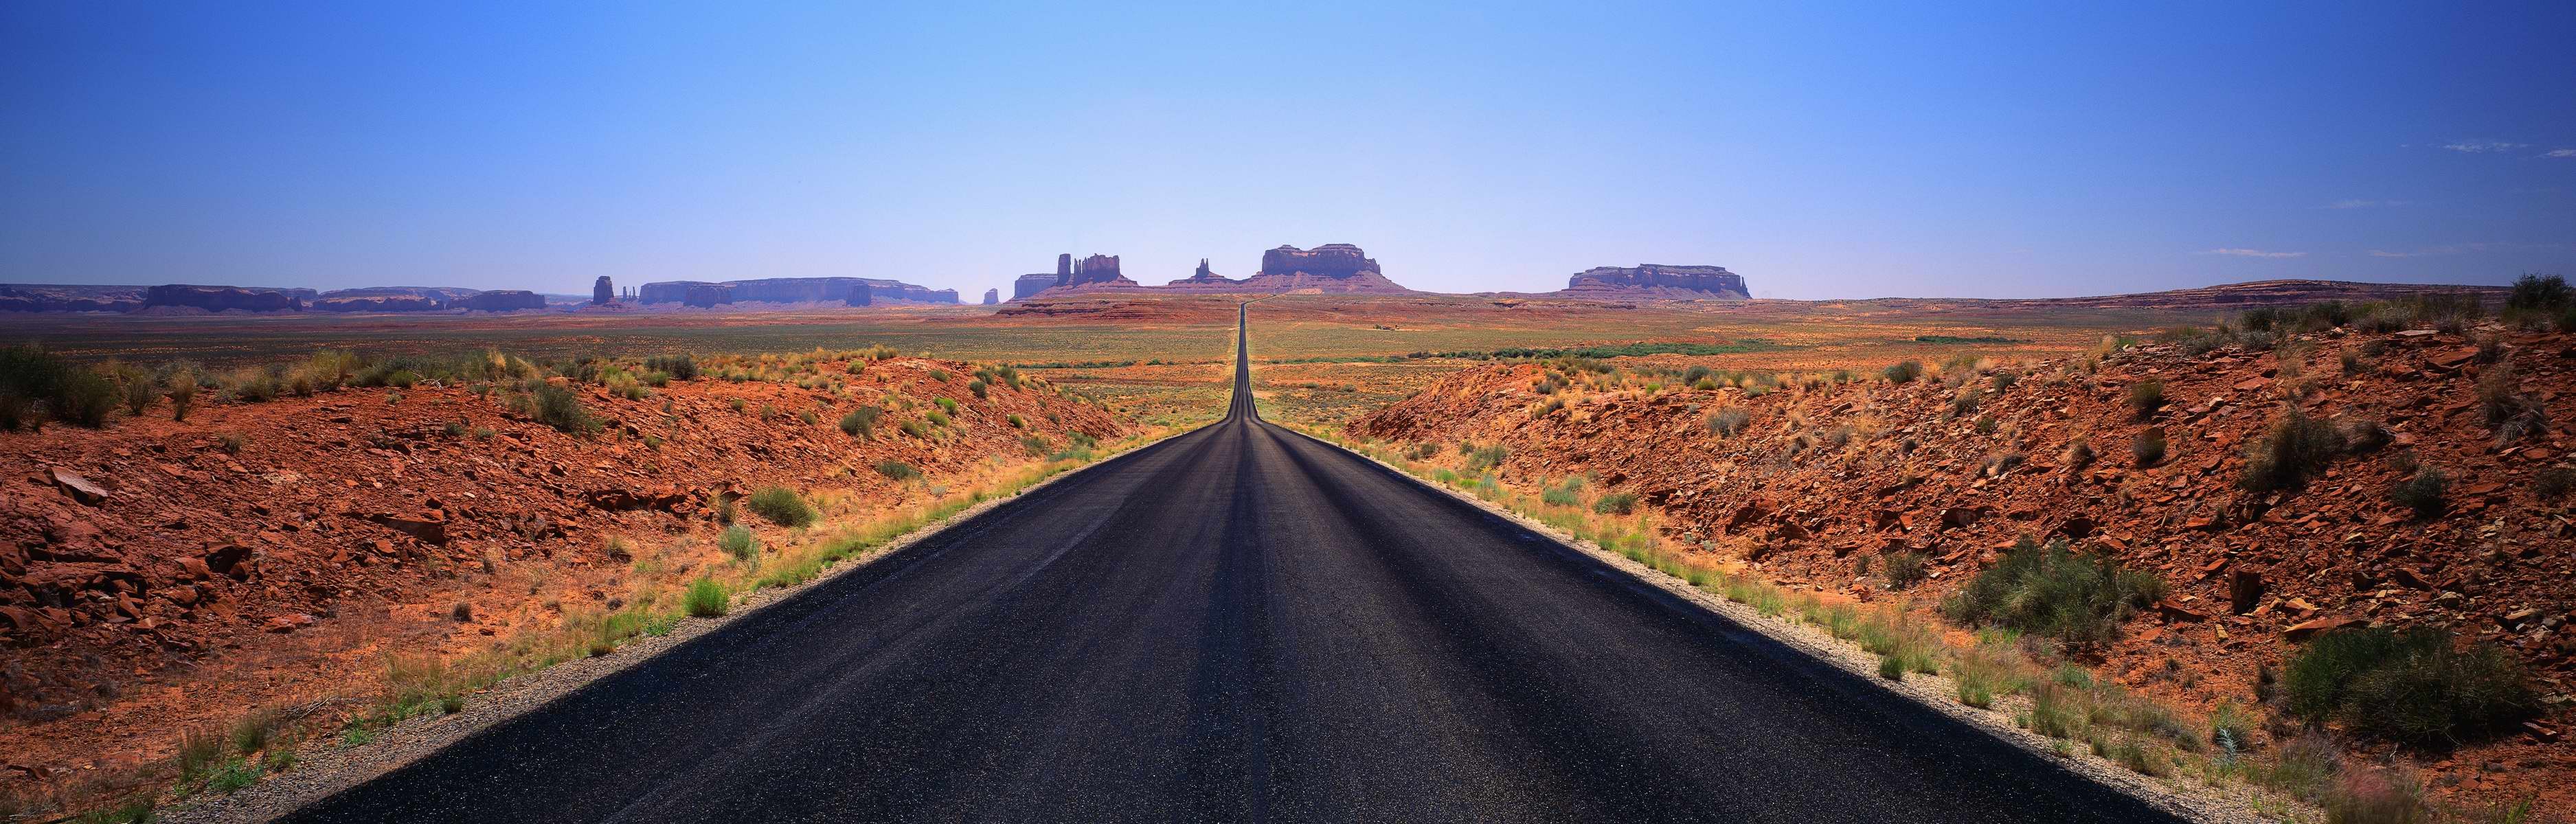 highways, roads - desktop wallpaper